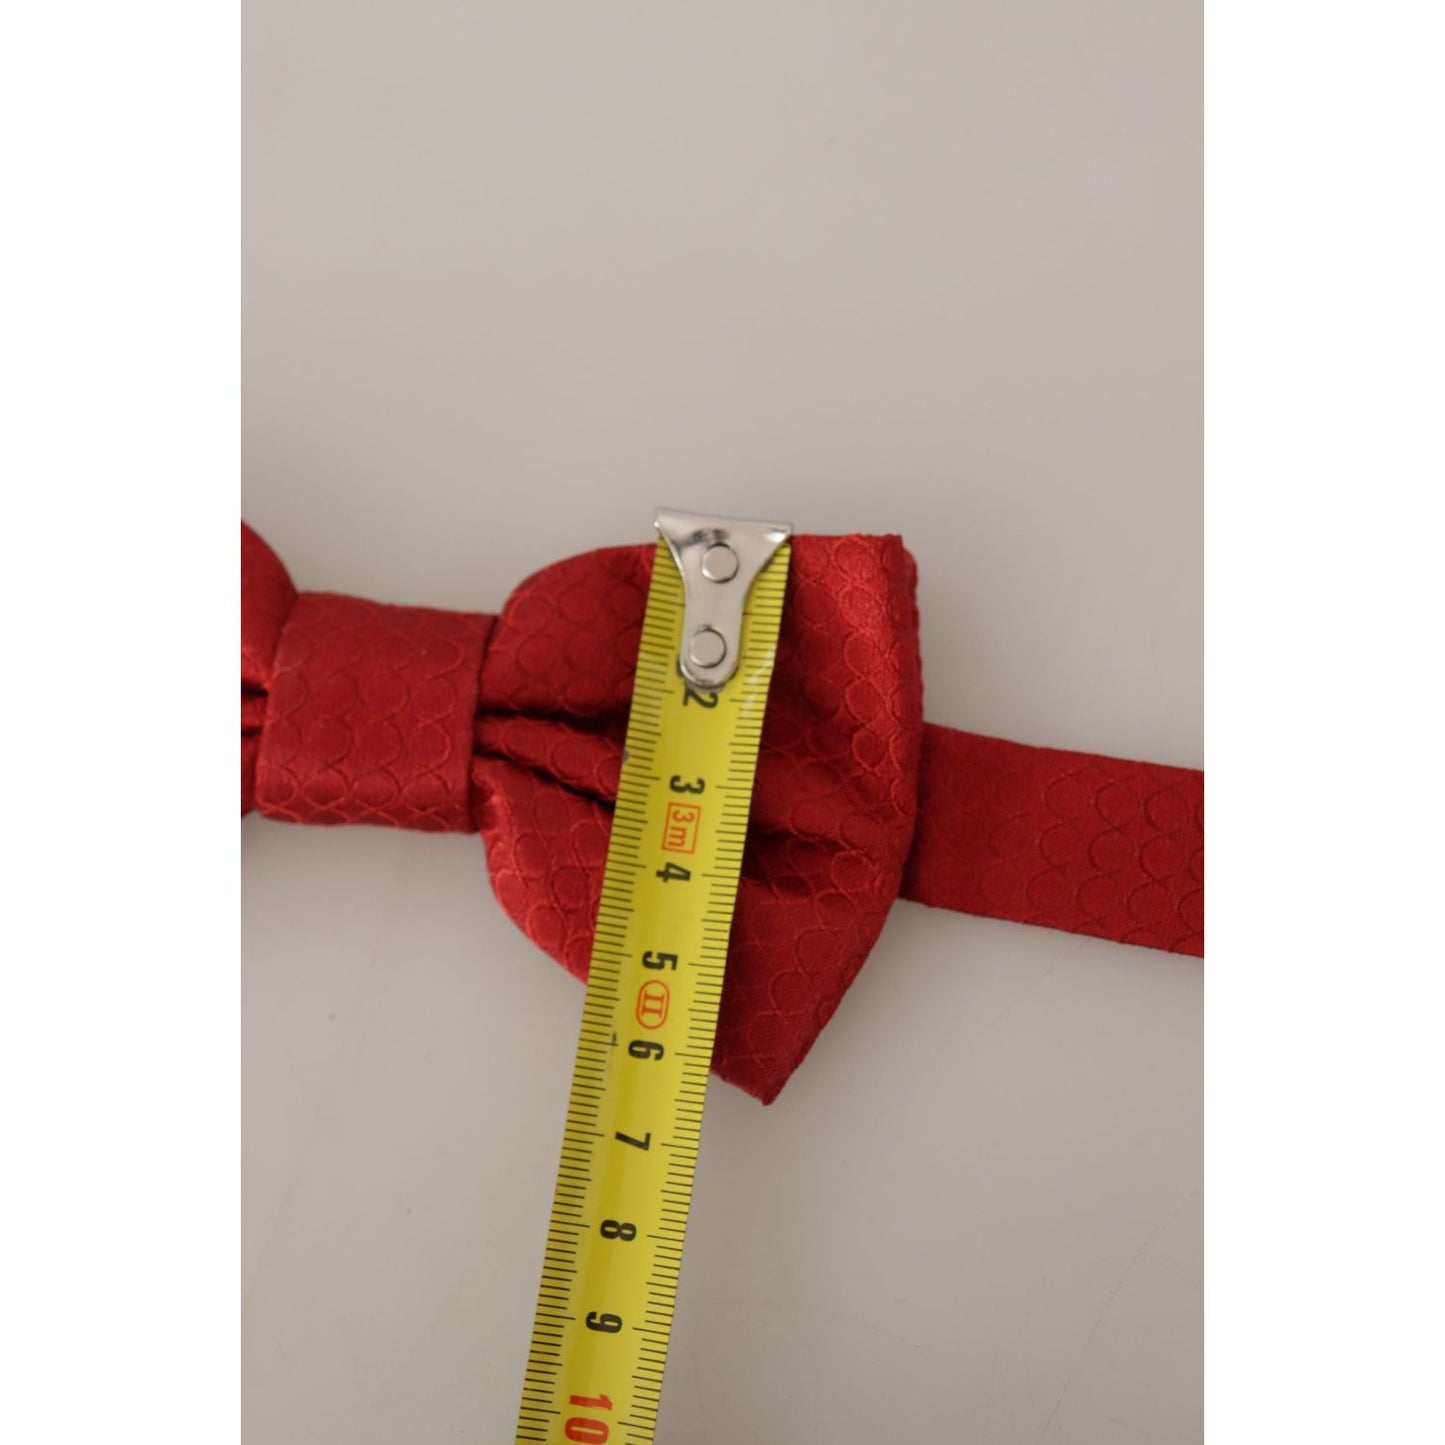 Dolce & Gabbana Elegant Red Silk Tied Bow Tie elegant-red-silk-tied-bow-tie IMG_7630-scaled-7544cf0f-896.jpg